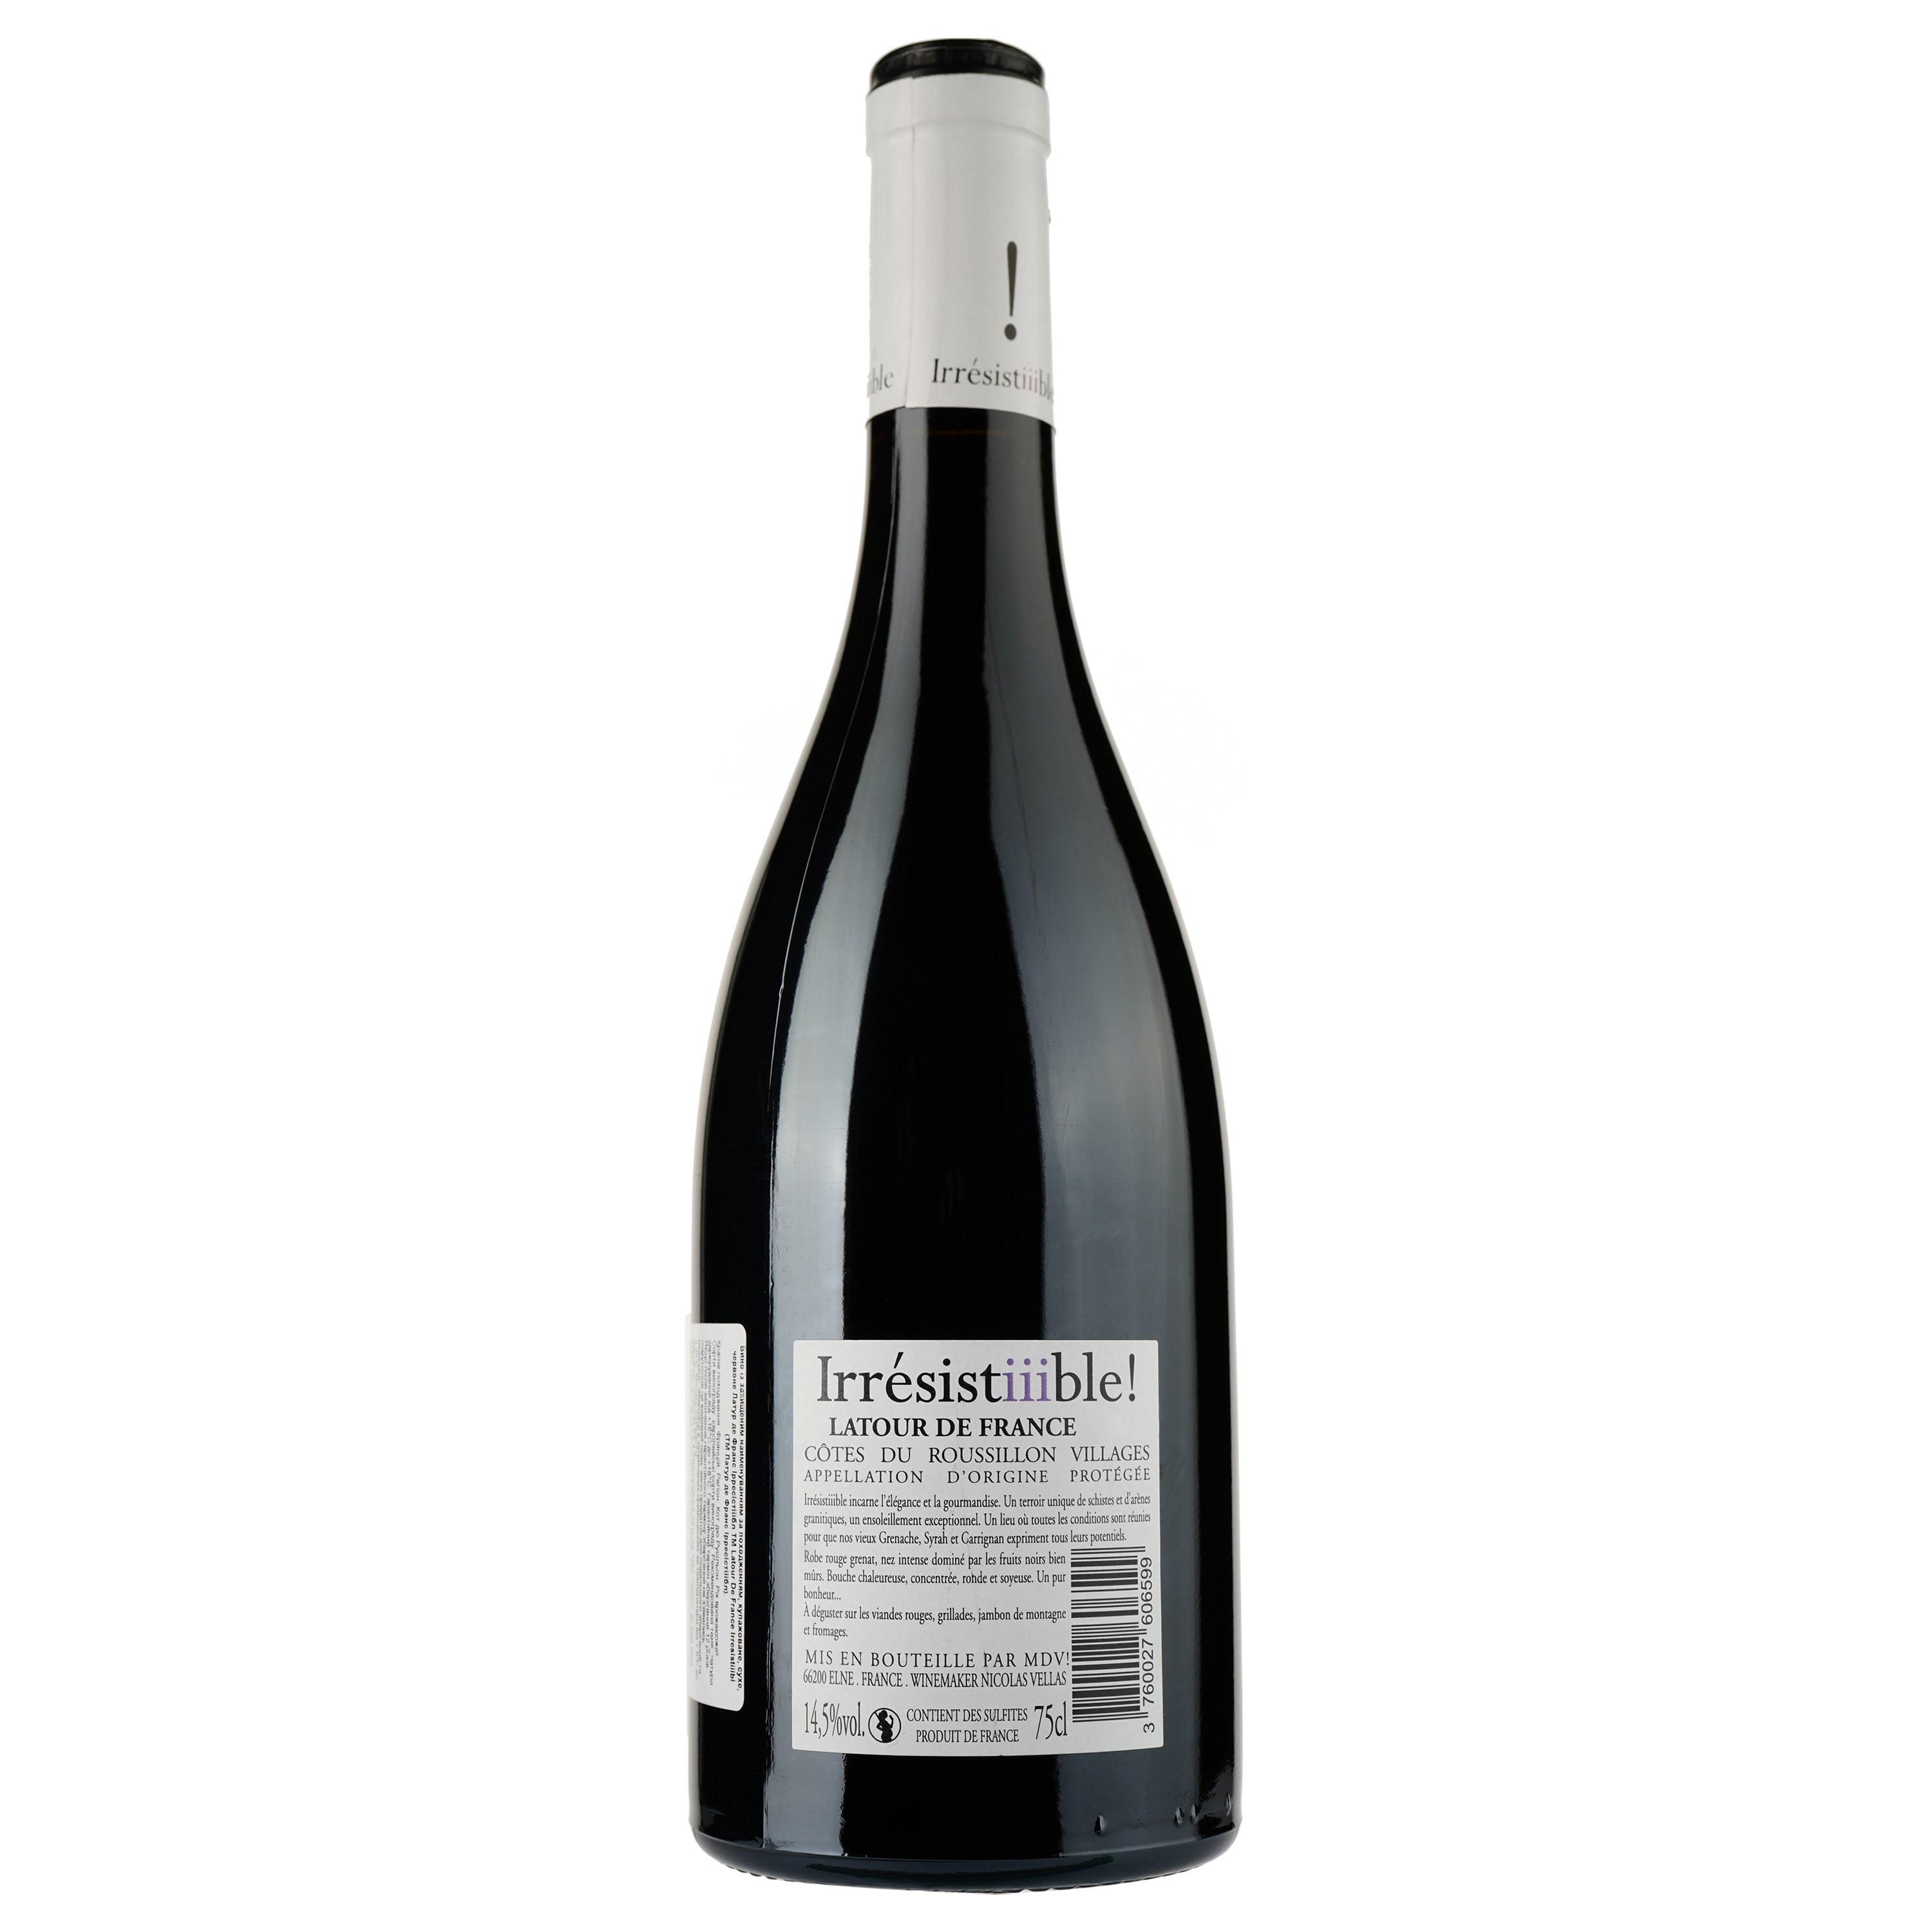 Вино Latour De France Irresistiiible AOP Cotes du Roussillon 2020, красное, сухое, 0,75 л - фото 2